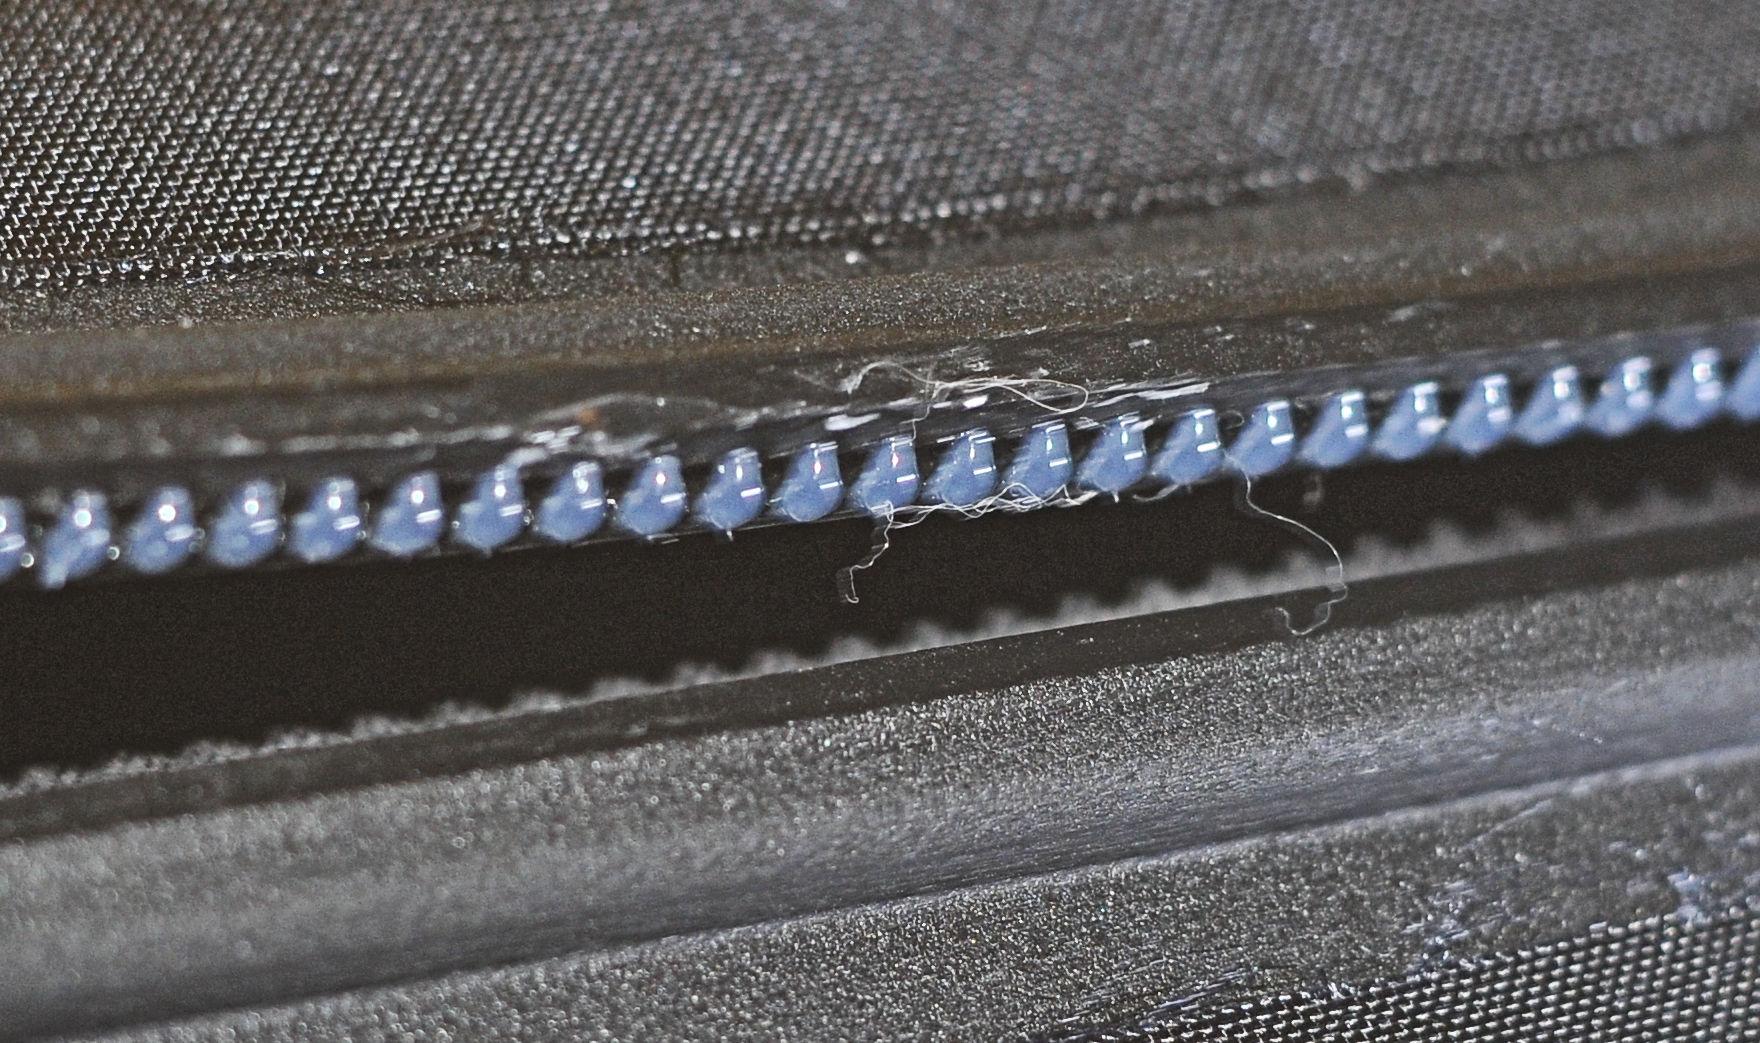 zipper damage from careless iron handling